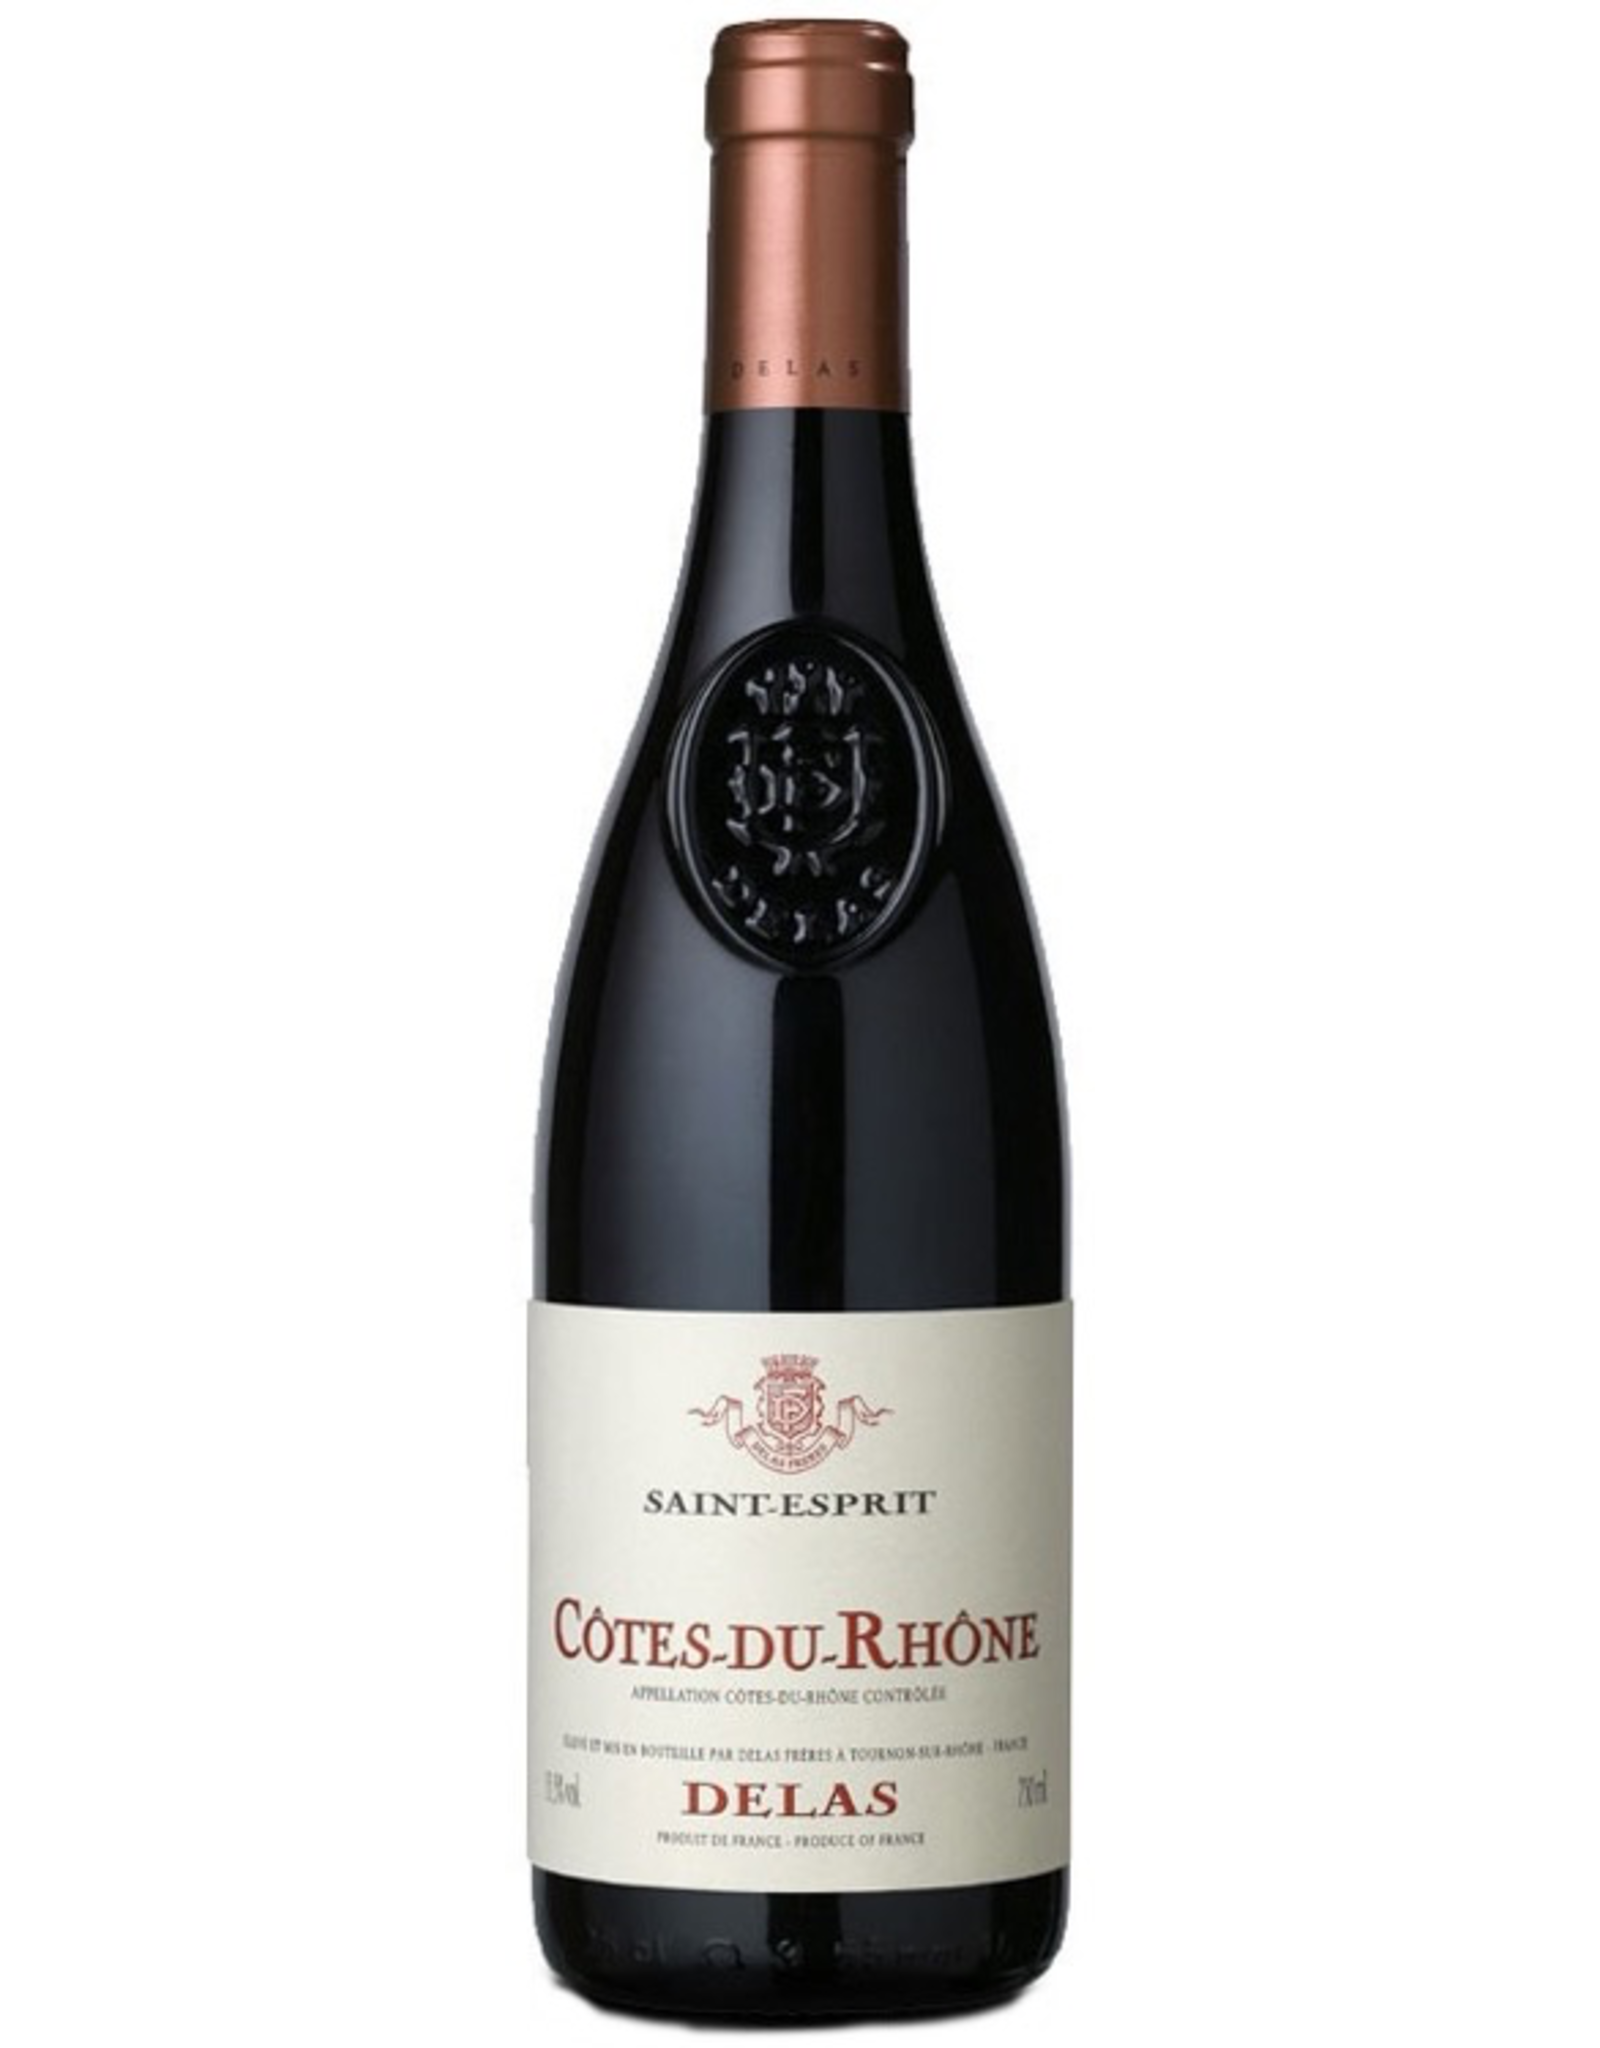 Red Wine 2018, Delas Saint-Esprit, Grenache/Syrah Blend, Cotes du Rhone, Southern Rhone, France, 14% Alc, CTnr